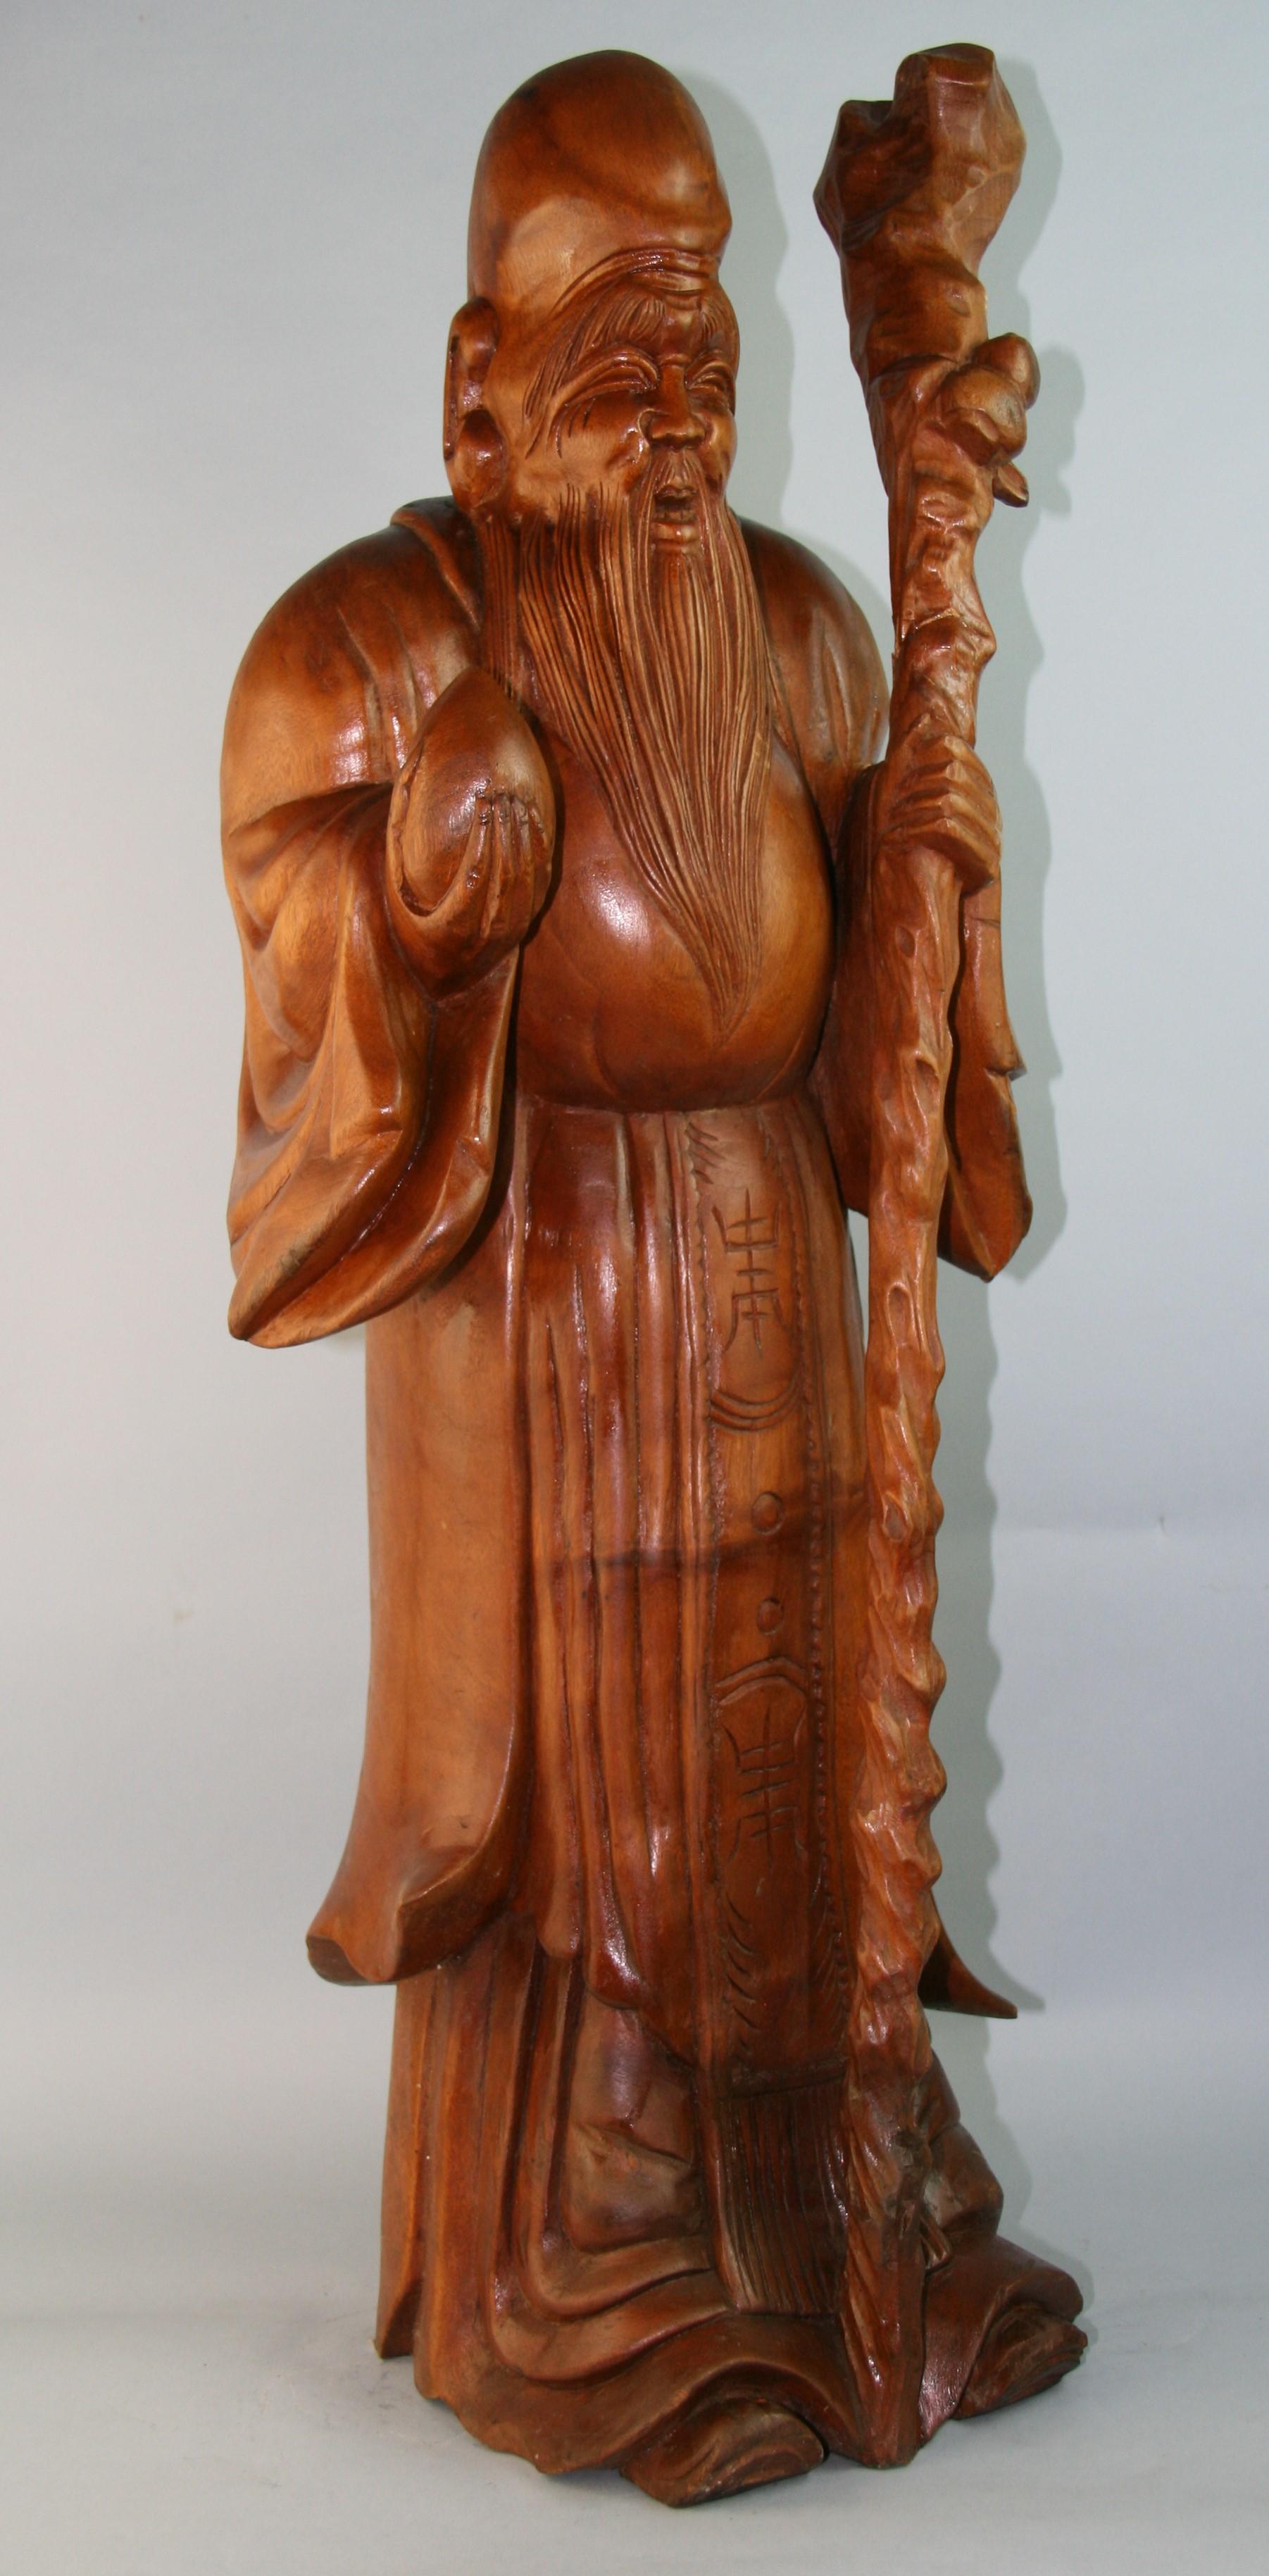 1157 Statue surdimensionnée, sculptée à la main, d'Okimono de Jurojin (dieu de la longévité)
un symbole de longue vie sculpté dans un bloc de buis massif.